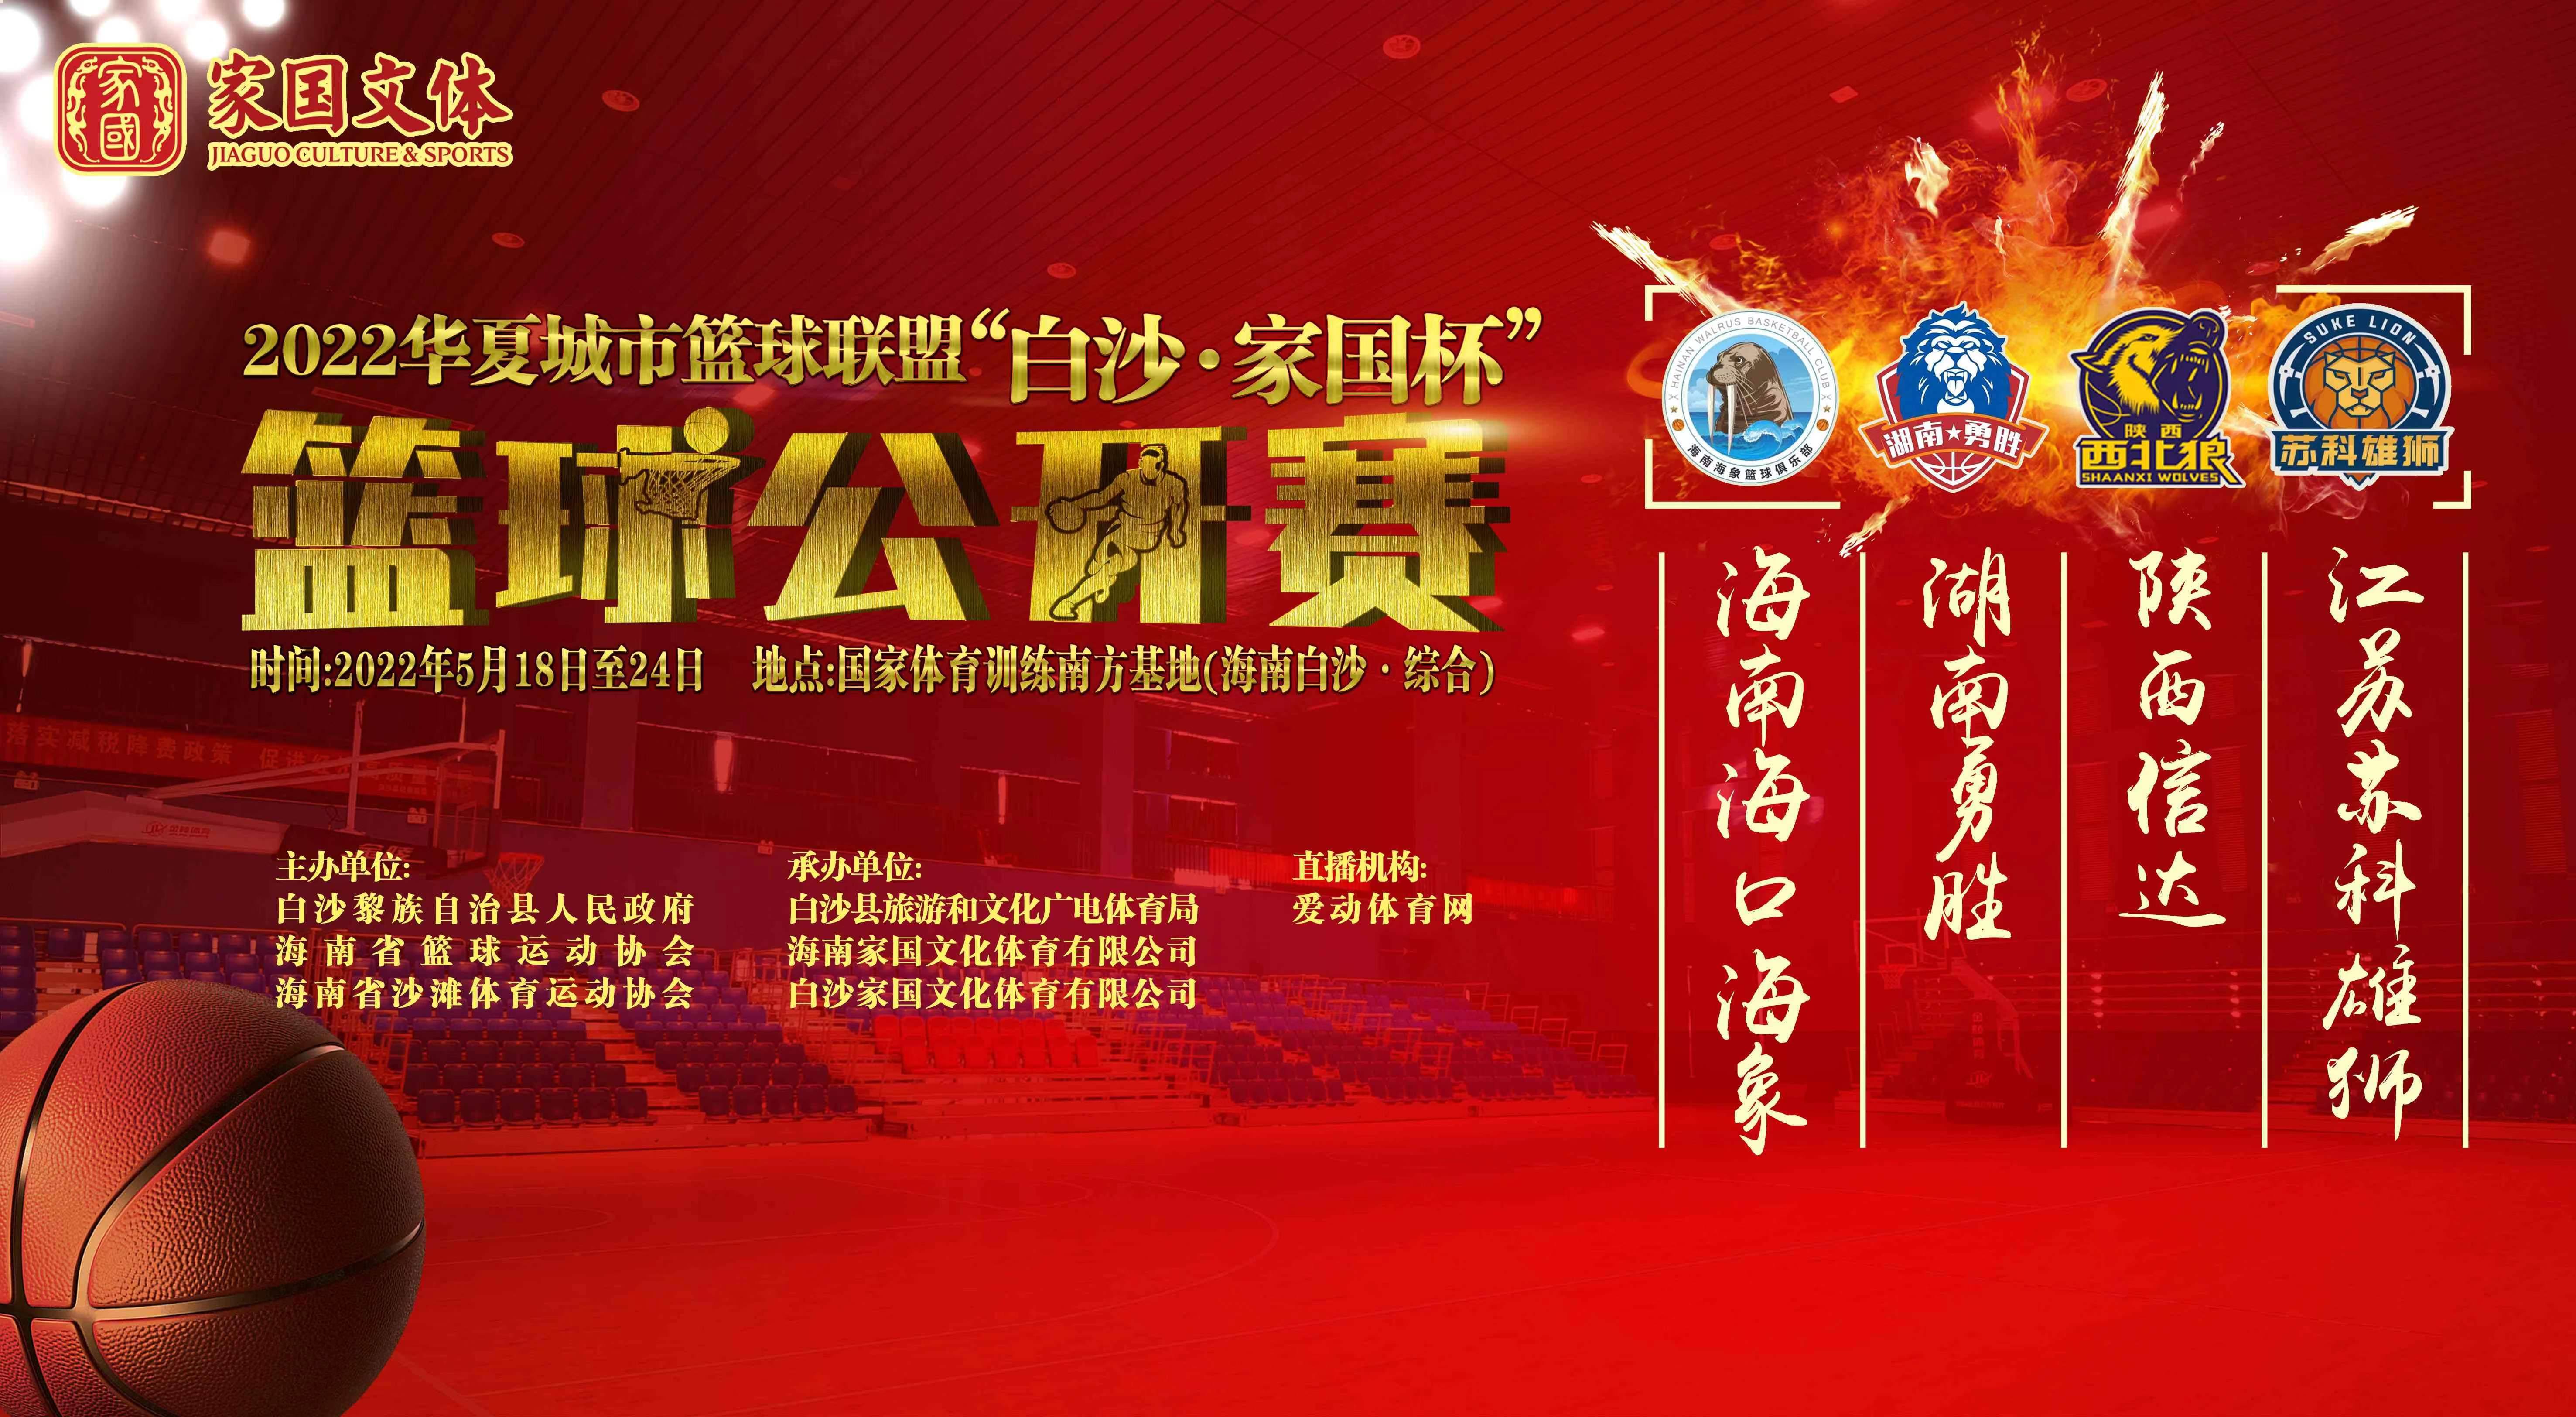 2022华夏城市篮球联盟“白沙·家国杯”篮球公开赛 5月19日